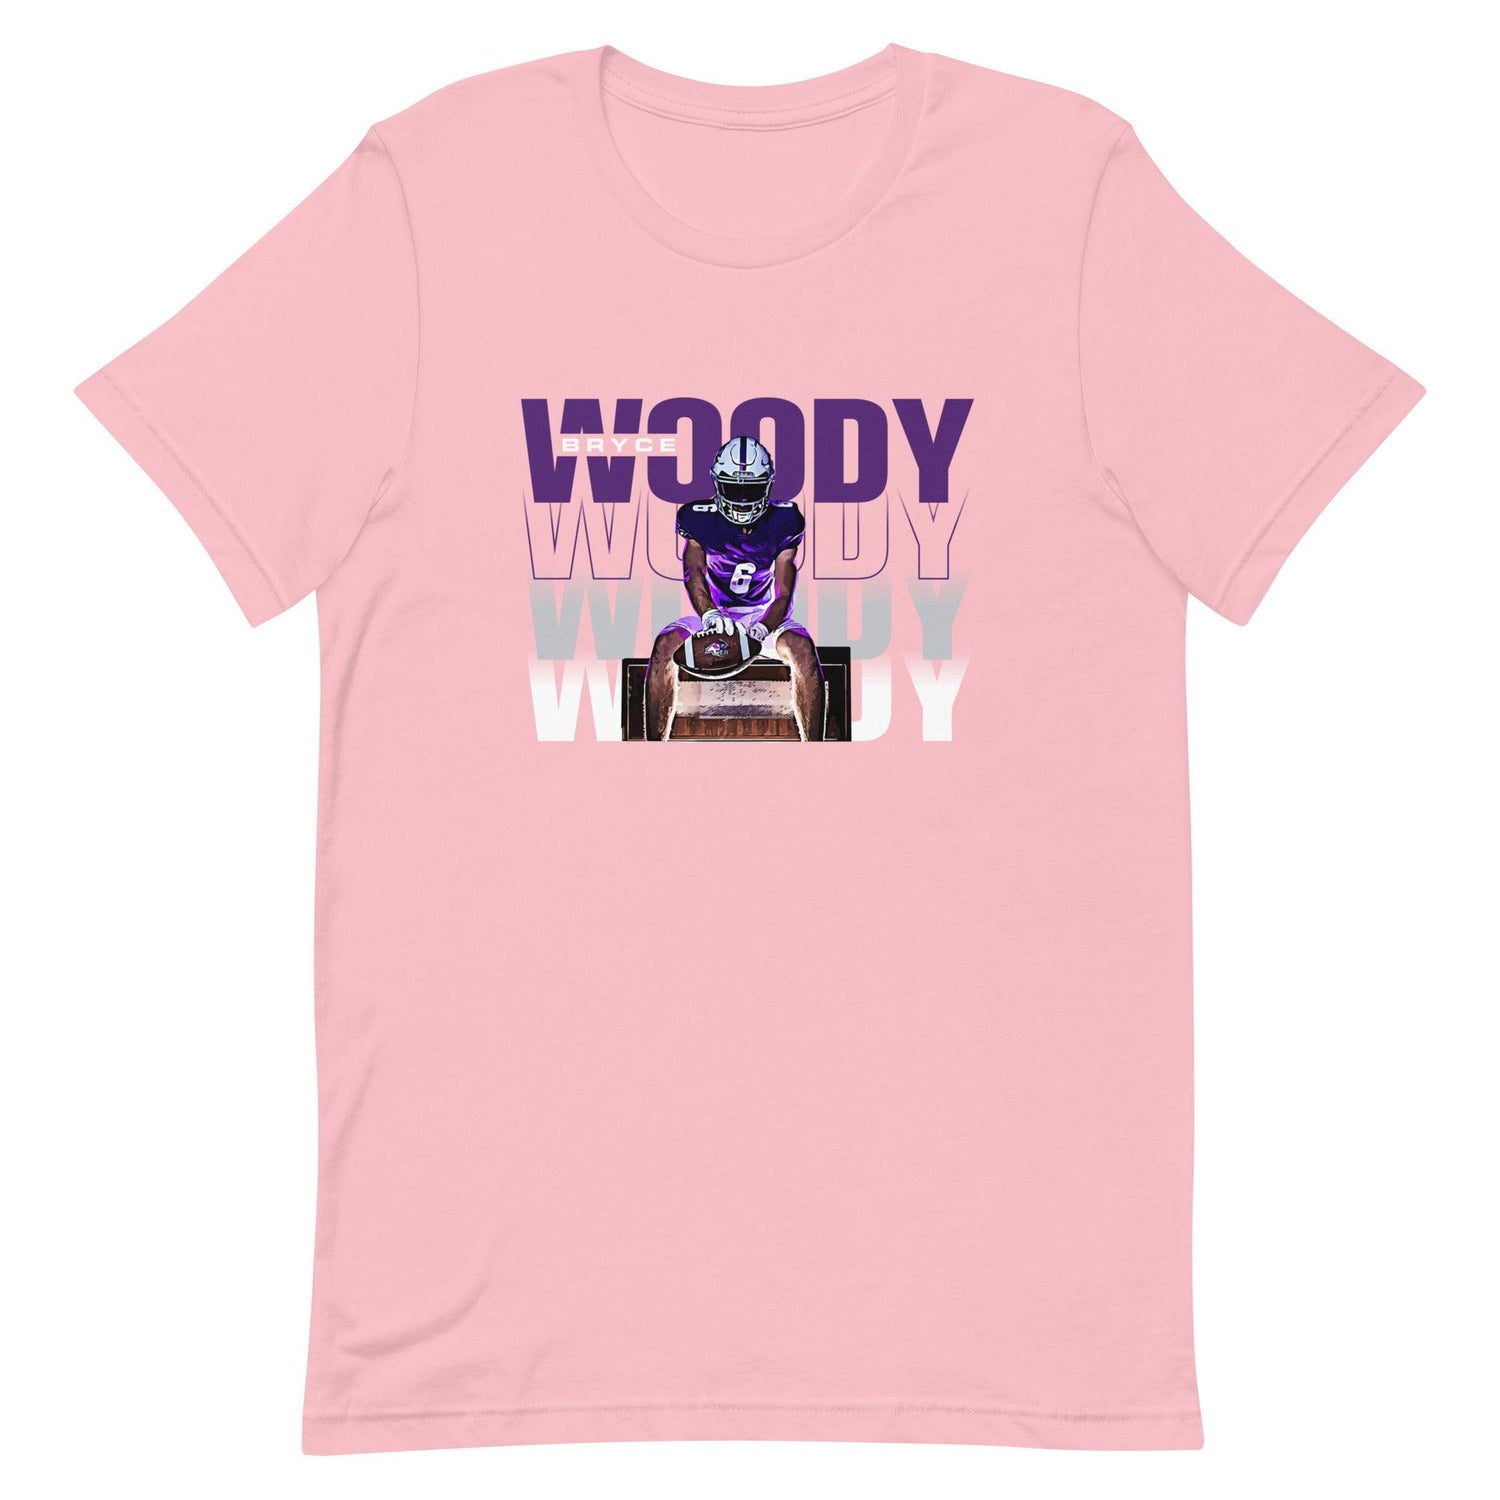 Bryce Woody "Gameday" t-shirt - Fan Arch